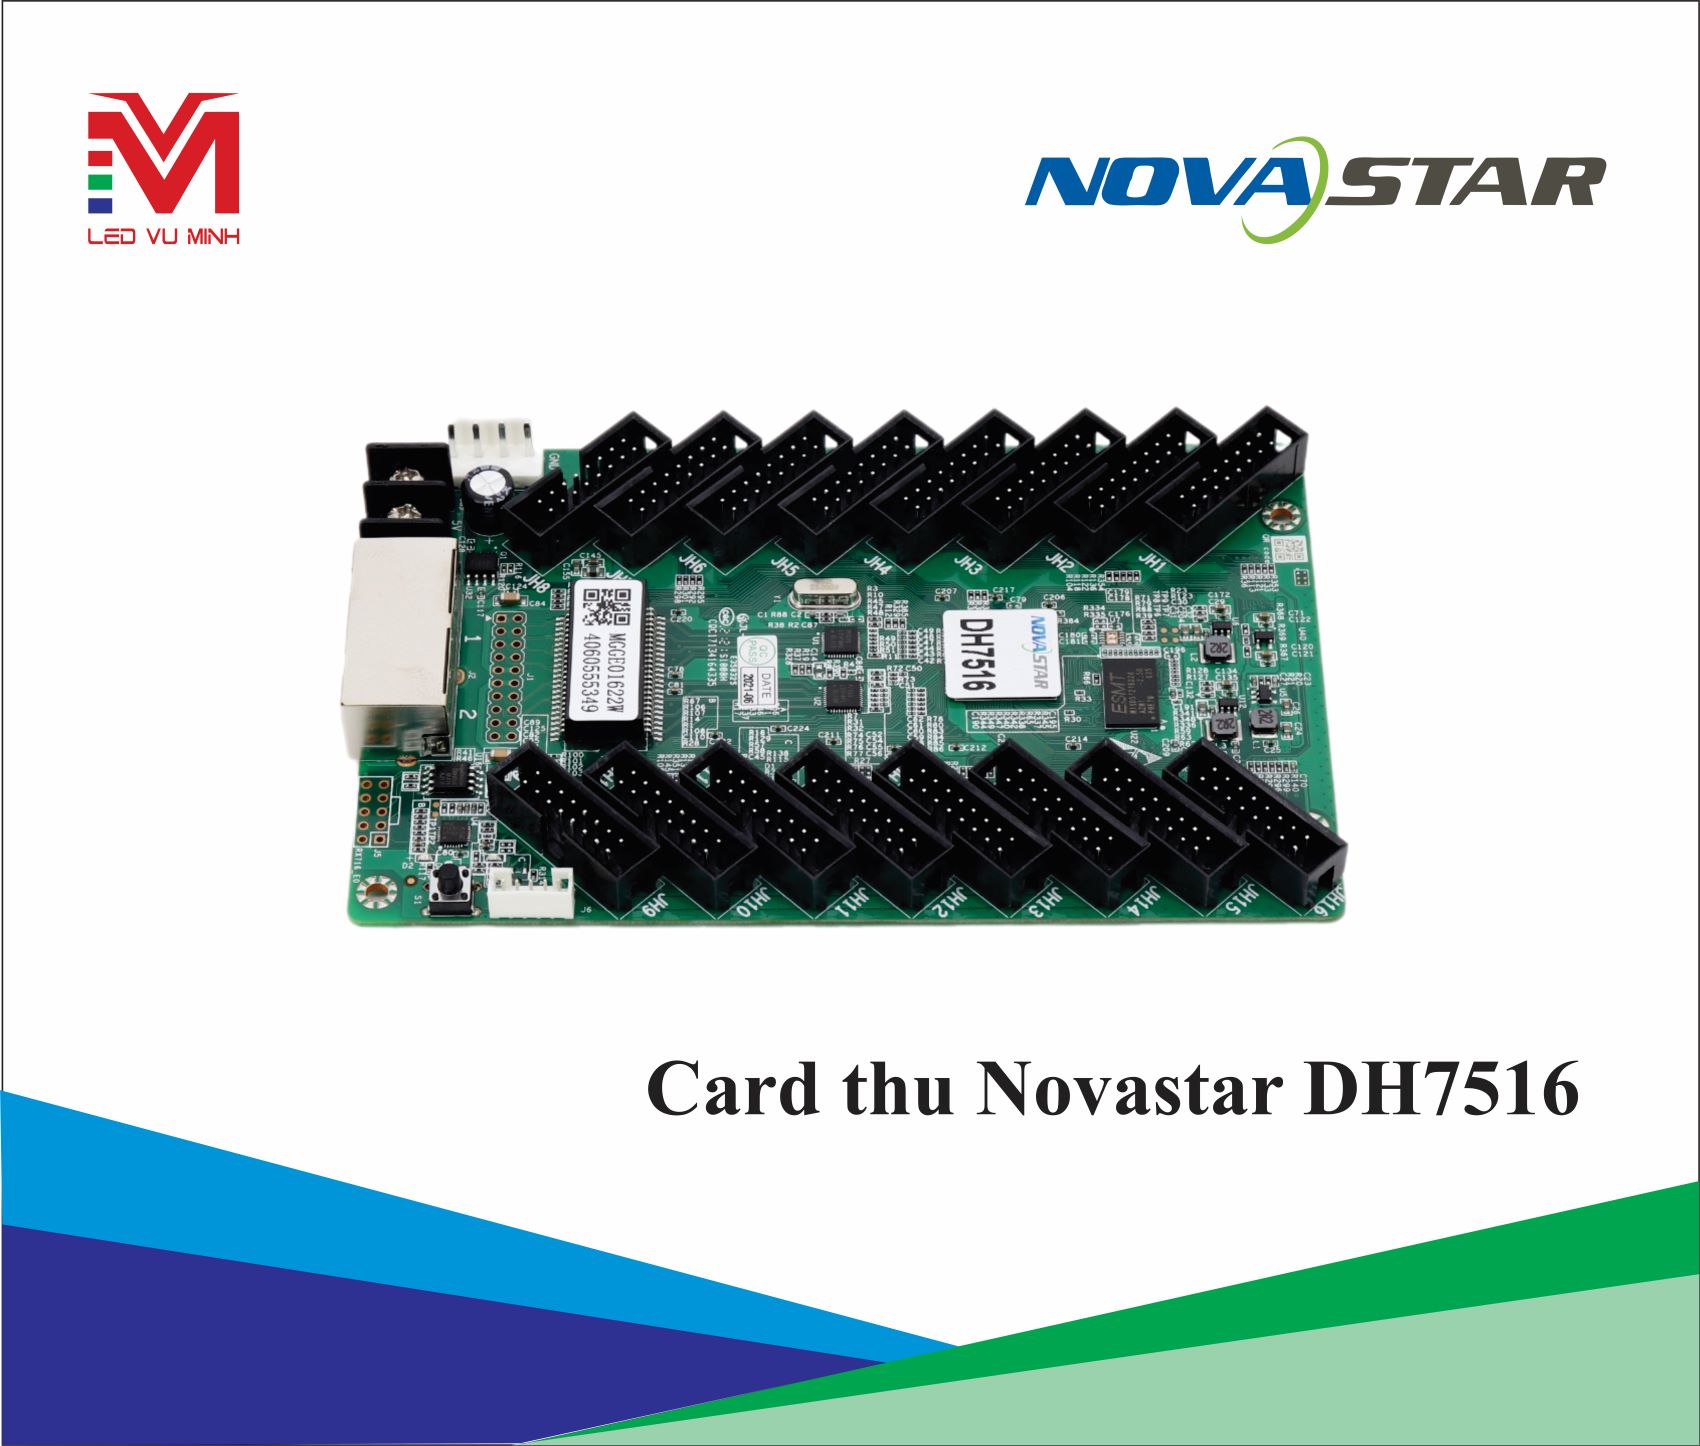 CARD THU NOVA - DH7516